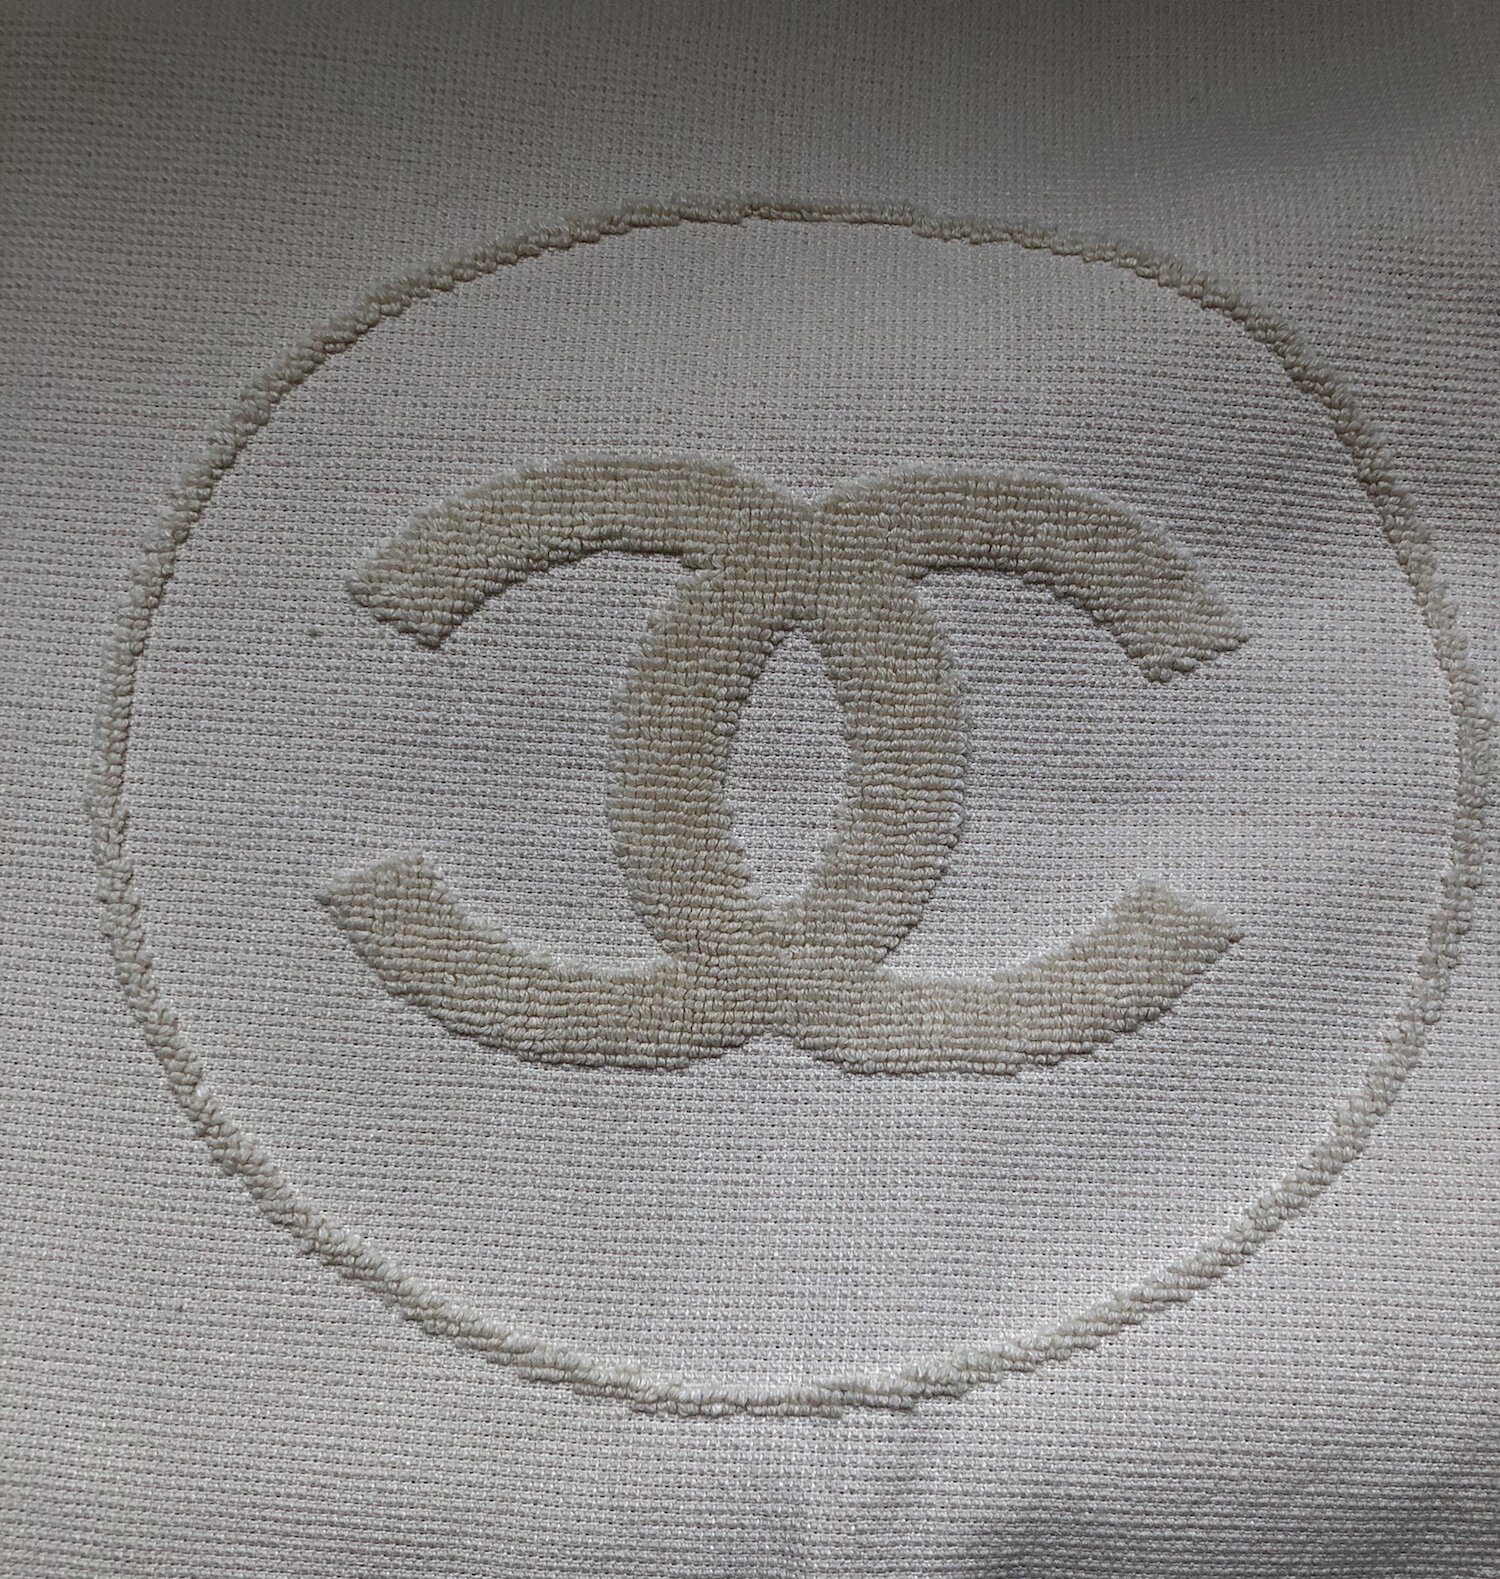 Chanel CC Logo White Towel — Mia Luxury Vintage